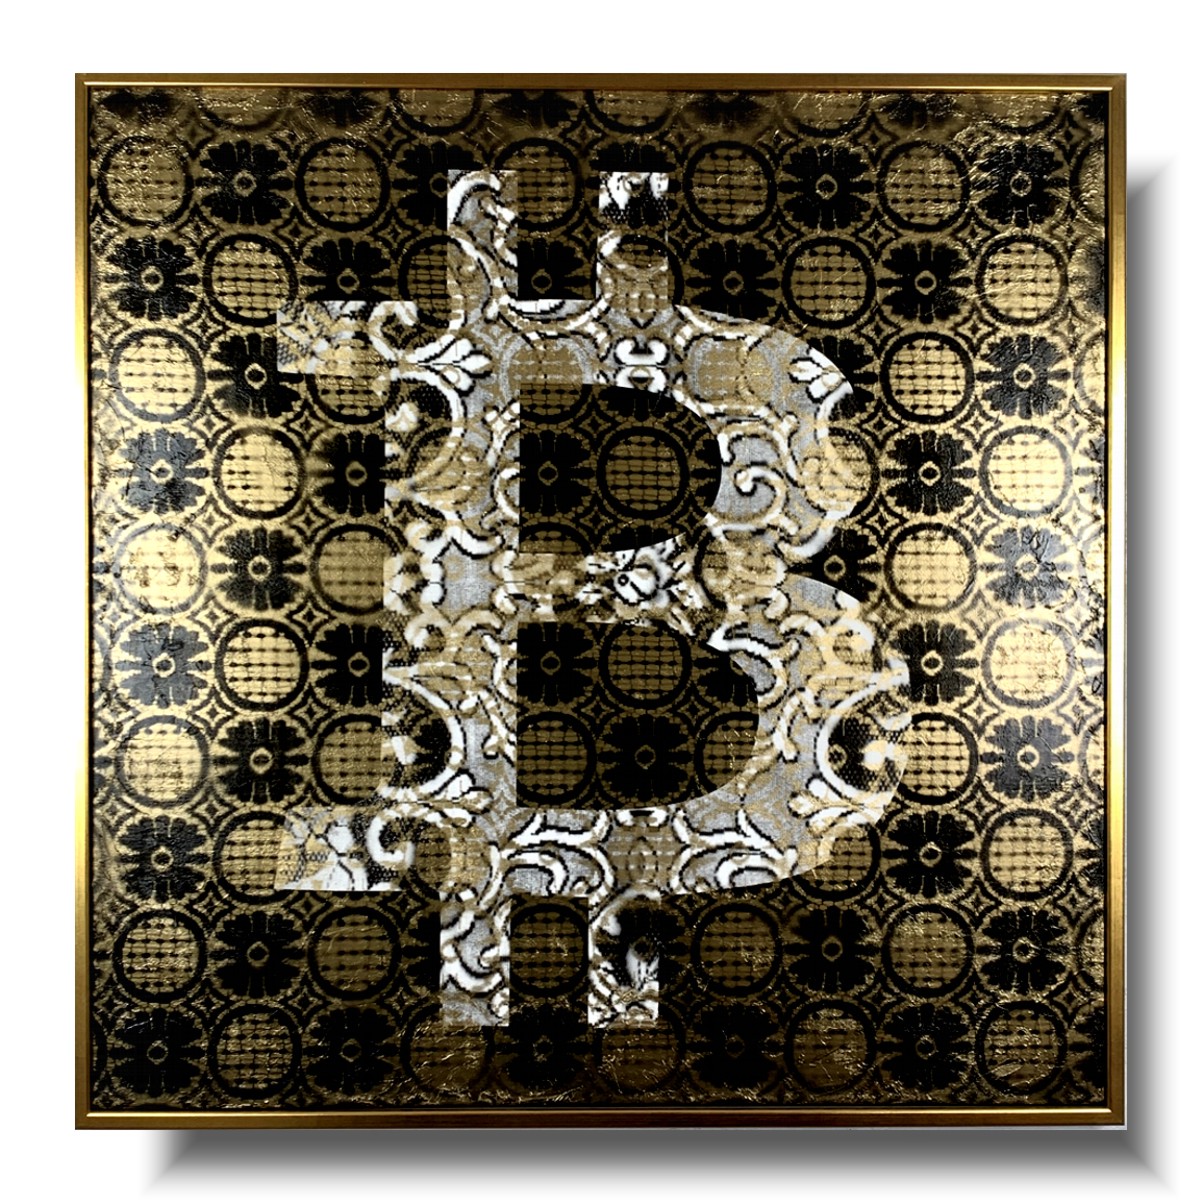 Obraz do salonu wzorzysty bitcoin w ramie, nowoczesny obraz, bitcoin obraz, obraz złoty, obraz bitcoin, obraz w złotej ramie, obraz kryptowaluty, obrazy do salonu sprzedaży,